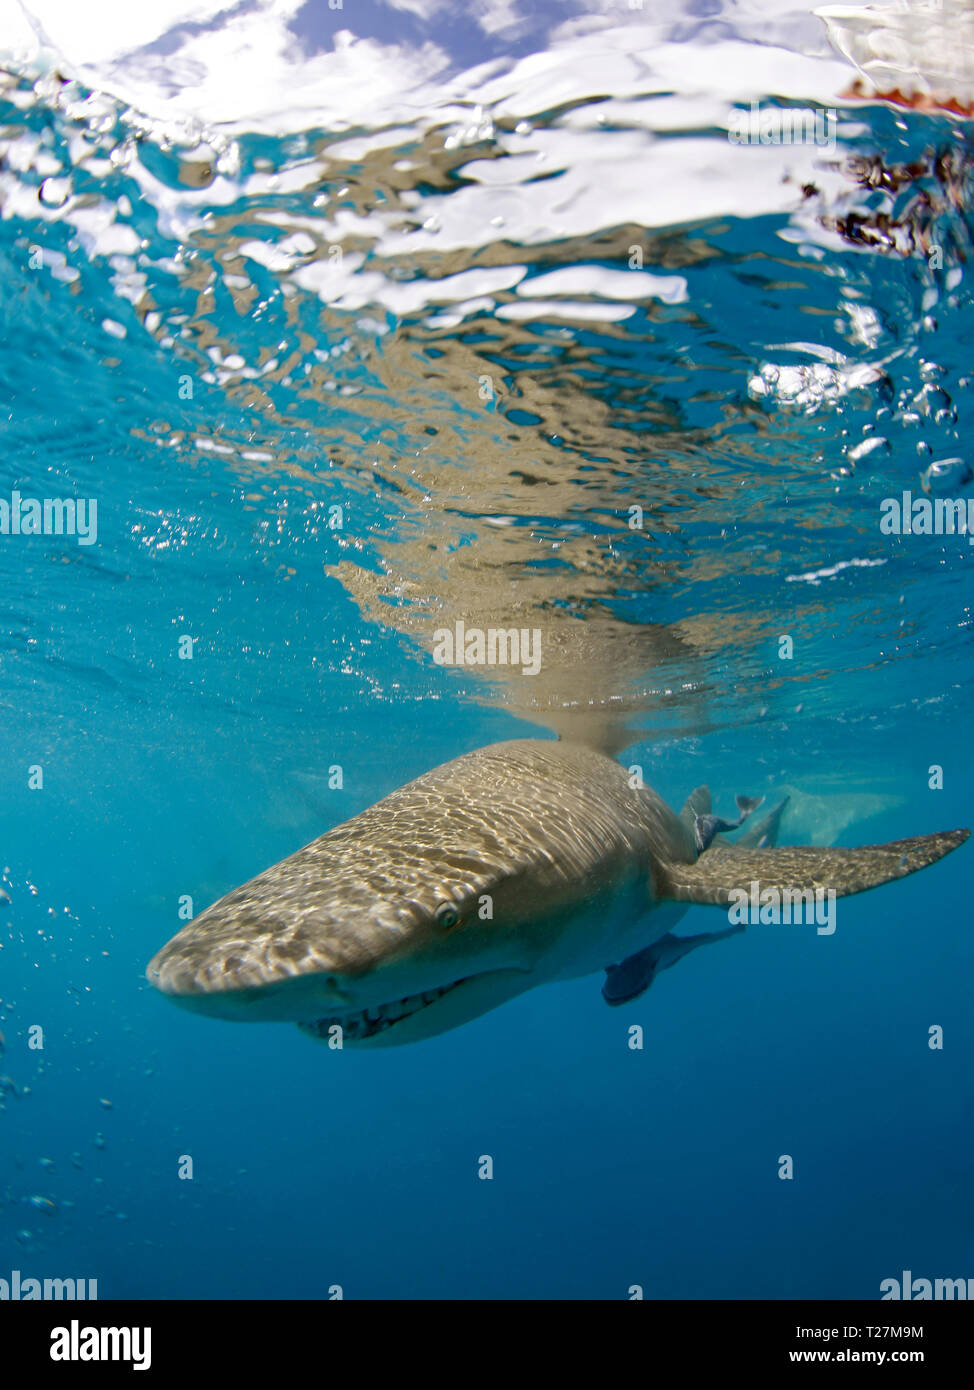 Le requin citron (Negaprion brevirostris) Approche de l'appareil photo, juste en dessous de la surface. Plage du tigre, Bahamas Banque D'Images